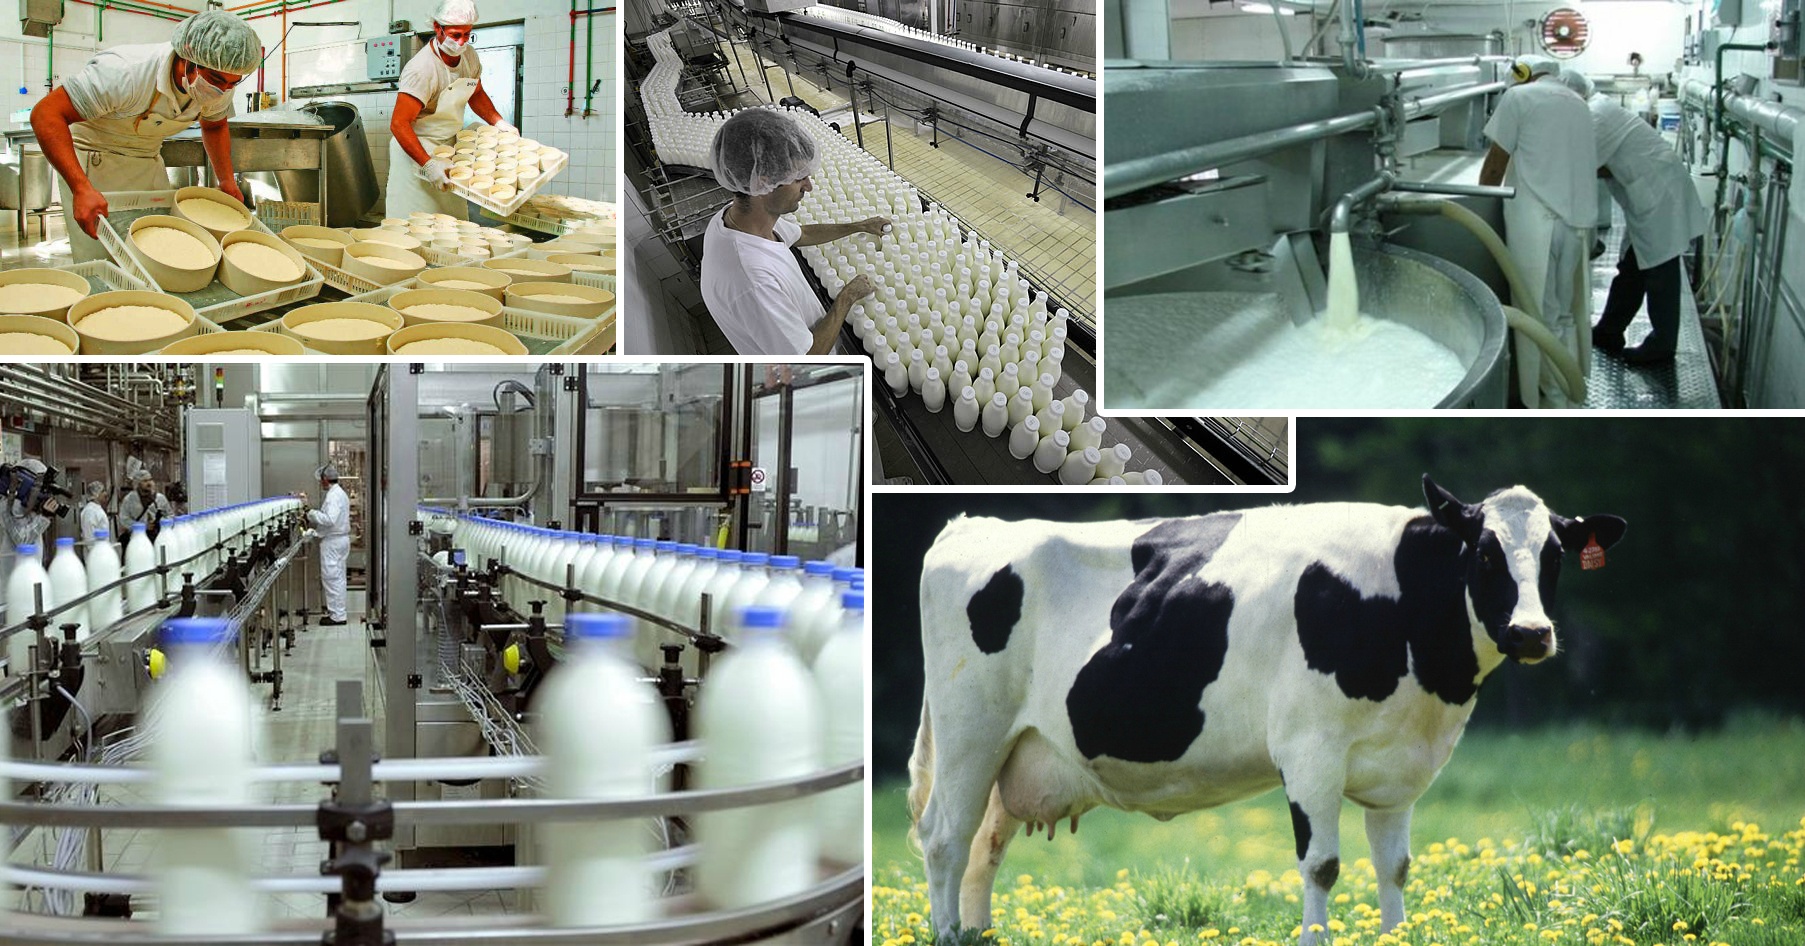 Народное хозяйство проект. Фирма "молочная ферма" Удмуртии. Технологии животноводства. Производство молока. Продукция животноводства в сельском хозяйстве.